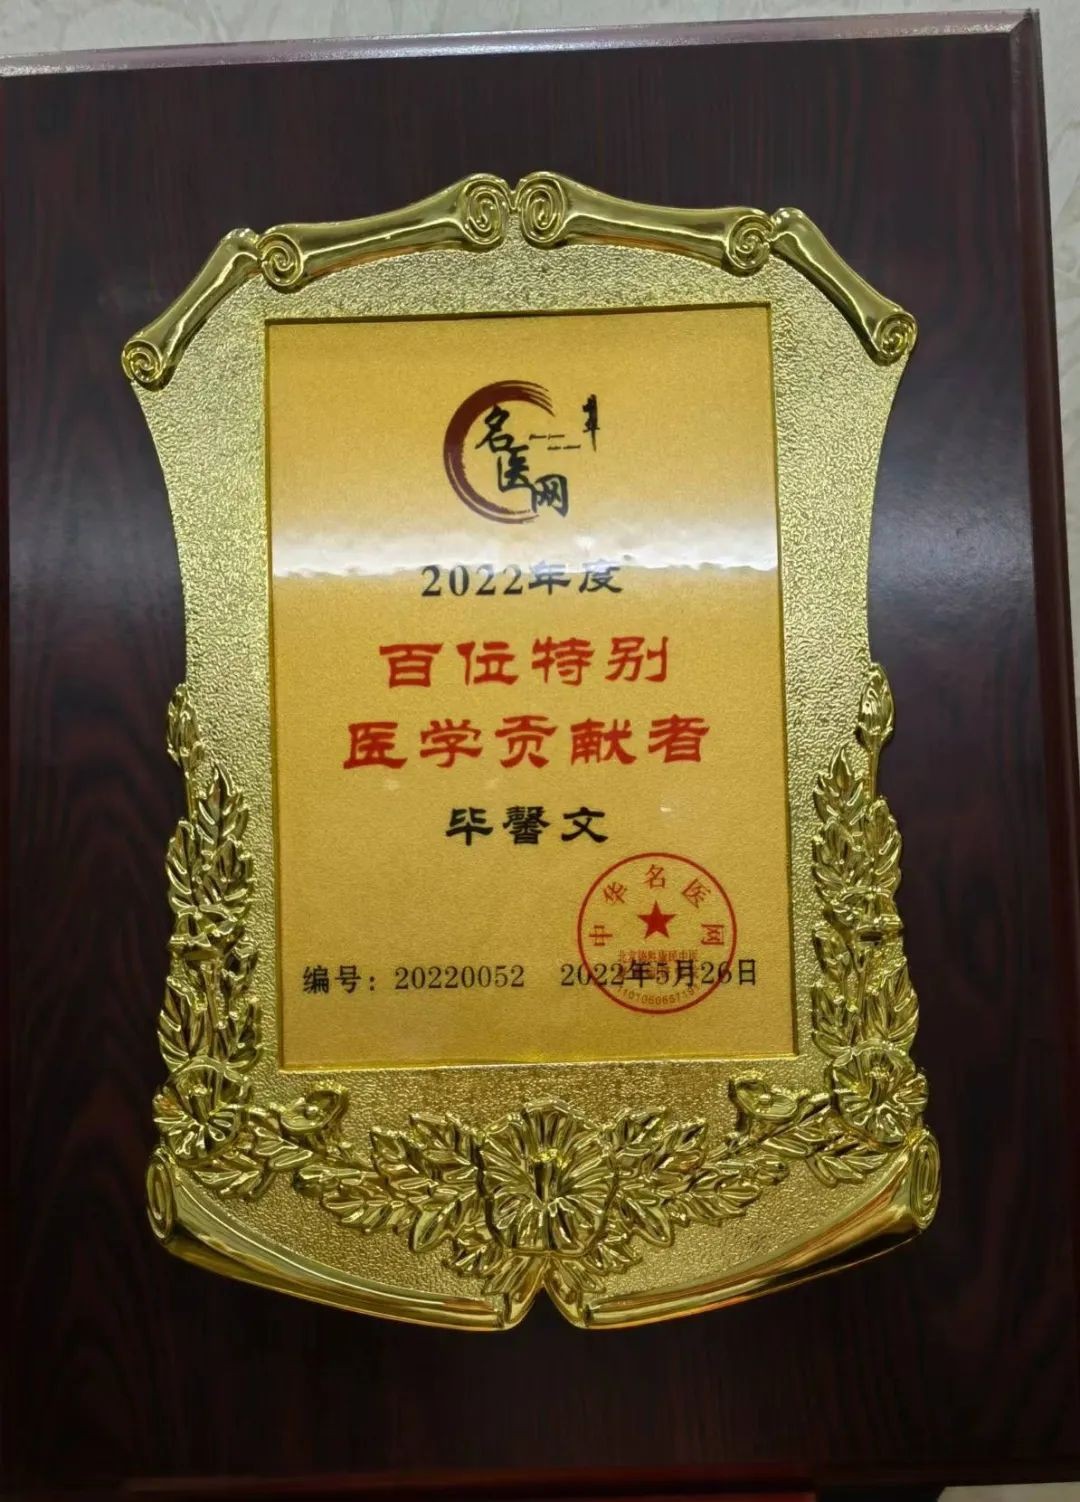 中科医学毕馨文博士荣获2022年度“百位特别医学贡献者”特别荣誉